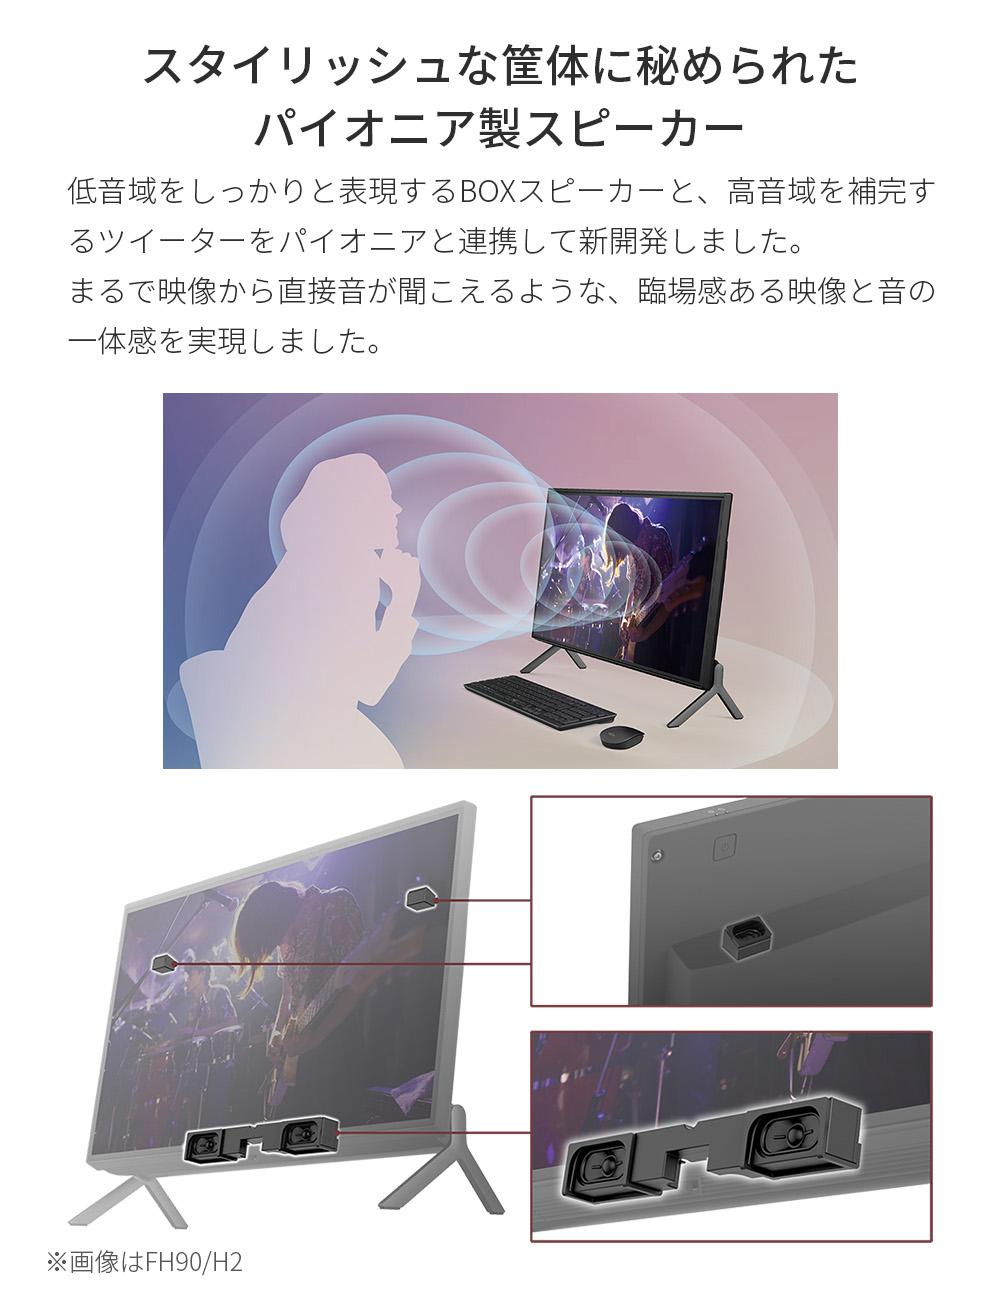 公式通販ショップ 富士通 スタイリッシュデスクトップPC HDD1TB & 新品